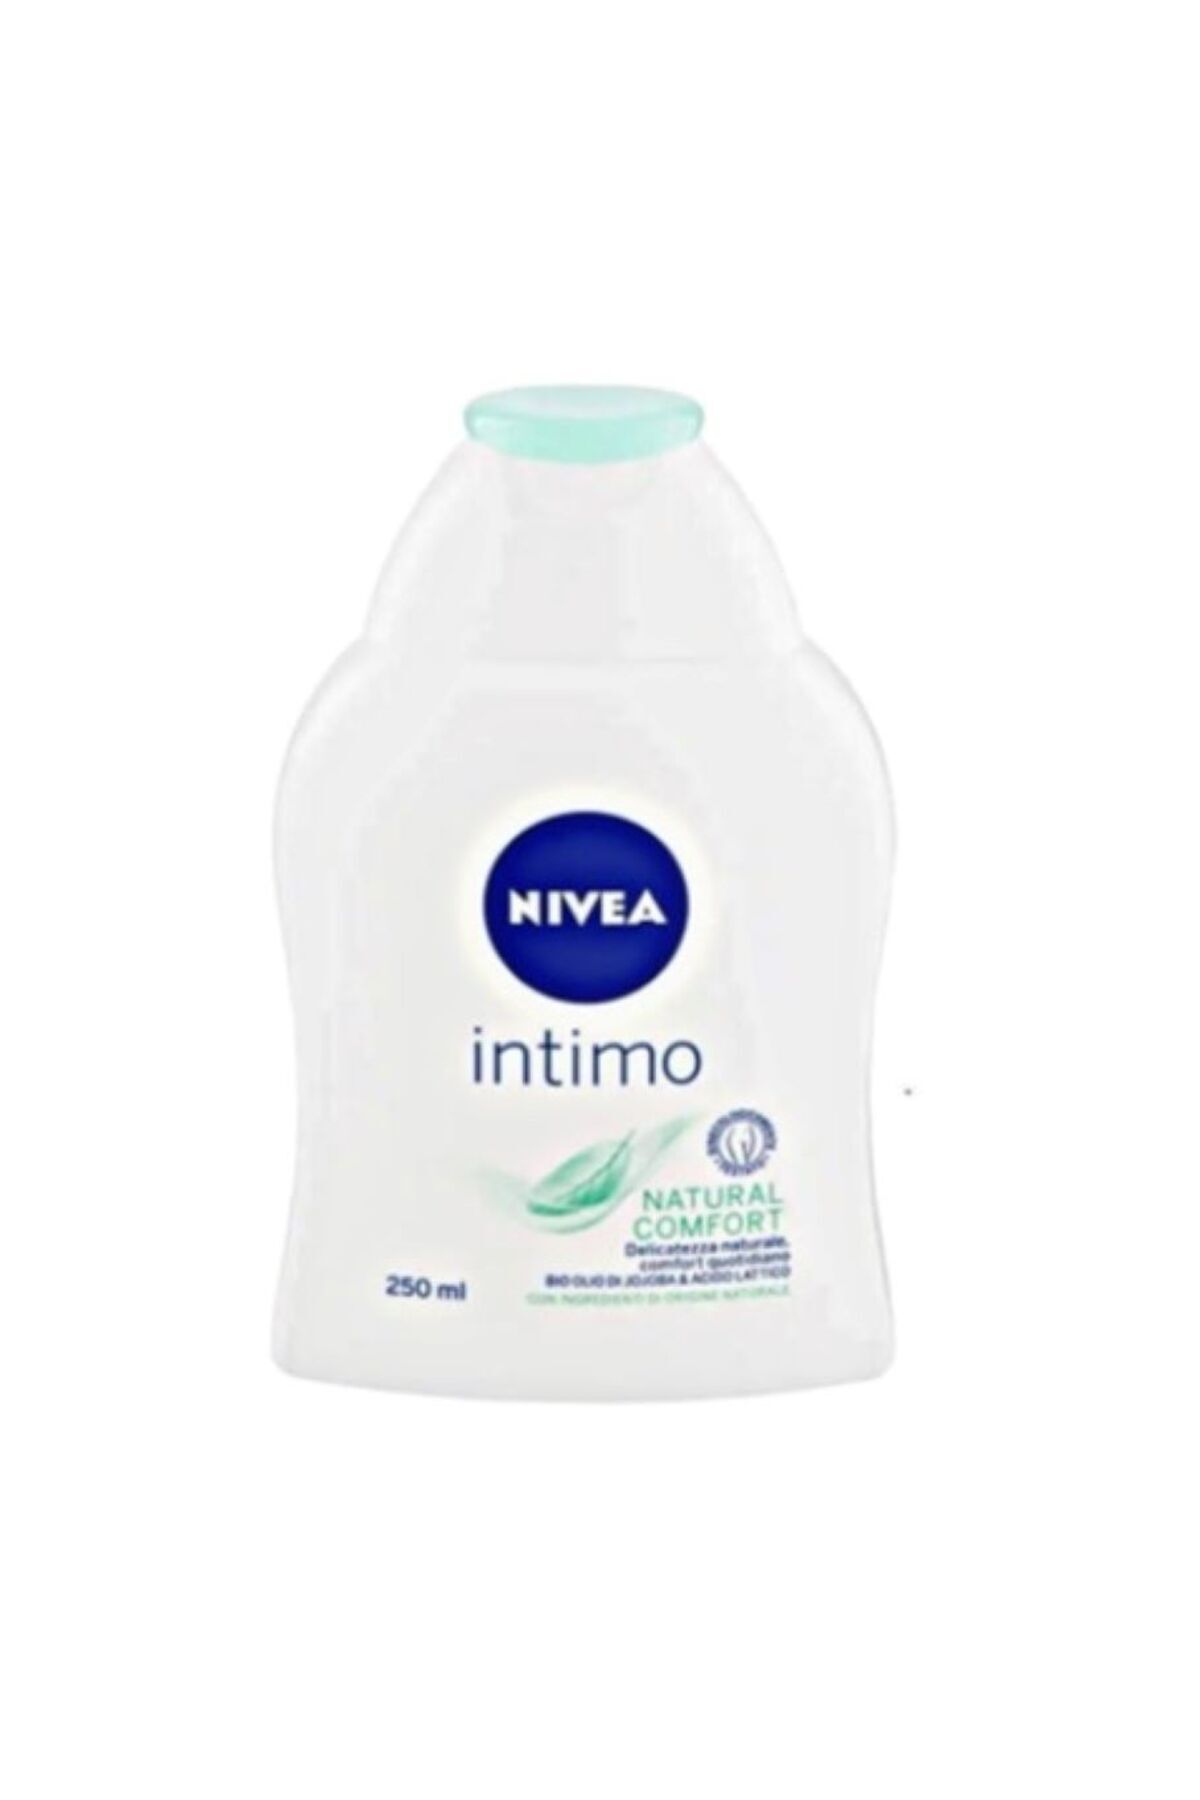 NIVEA Intimo Doğal Confort Genital Bölge Yıkama Ve Temizleme Losyonu 250ml, Alkali Sabun Içermez